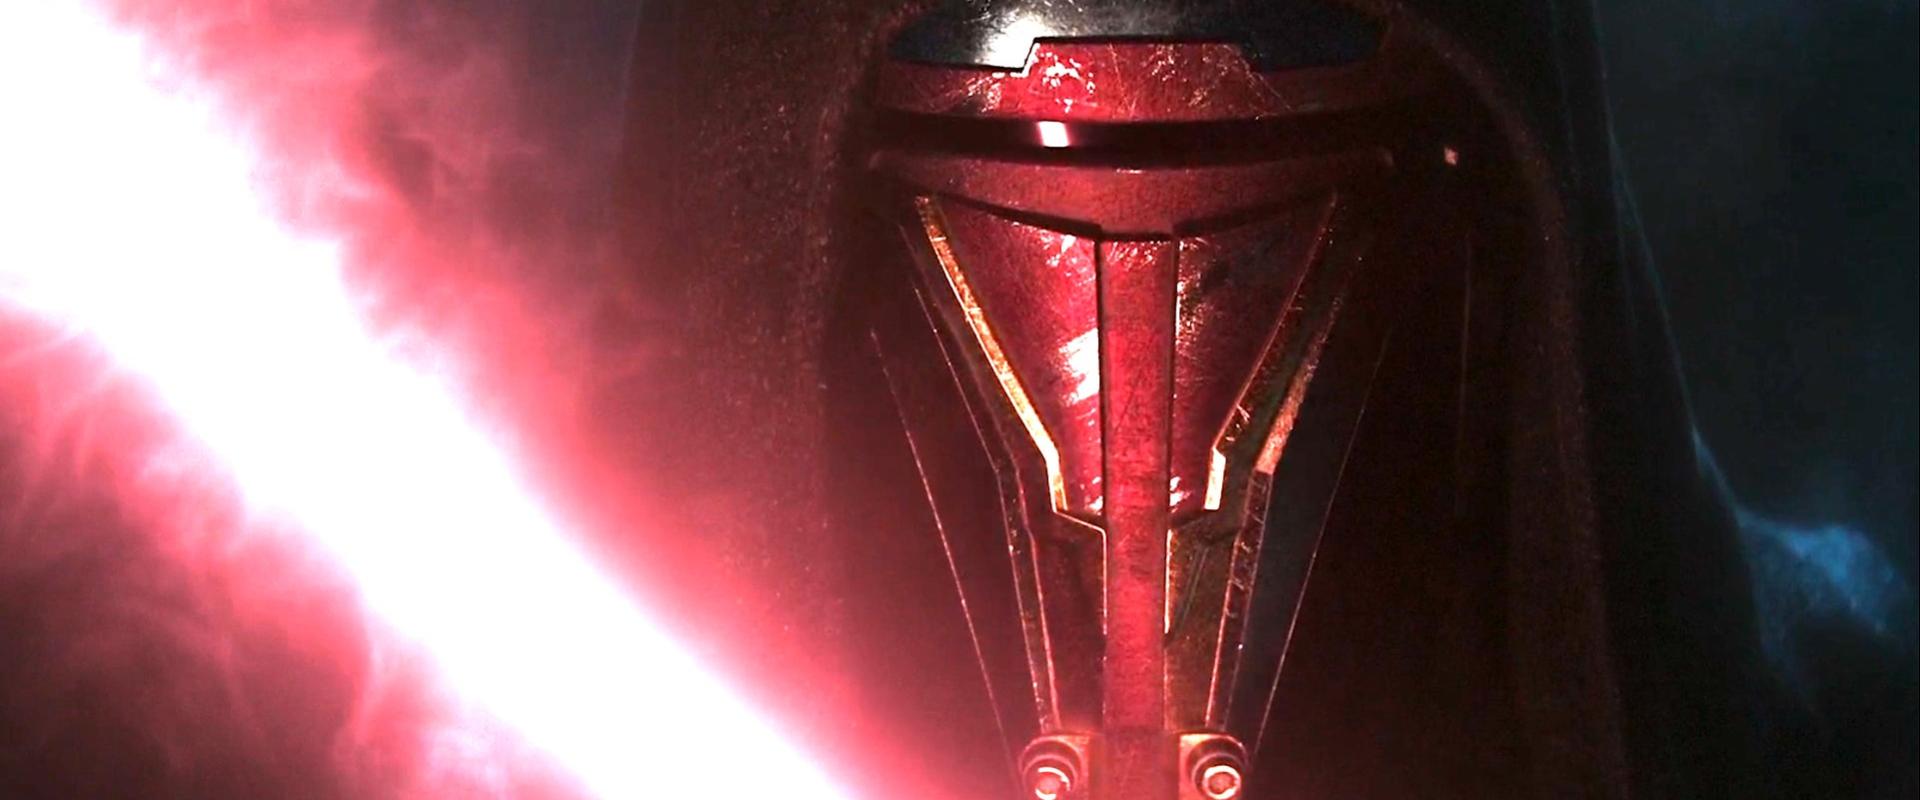 Még mindig fejlesztés alatt van a Star Wars: Knights of the Old Republic Remake